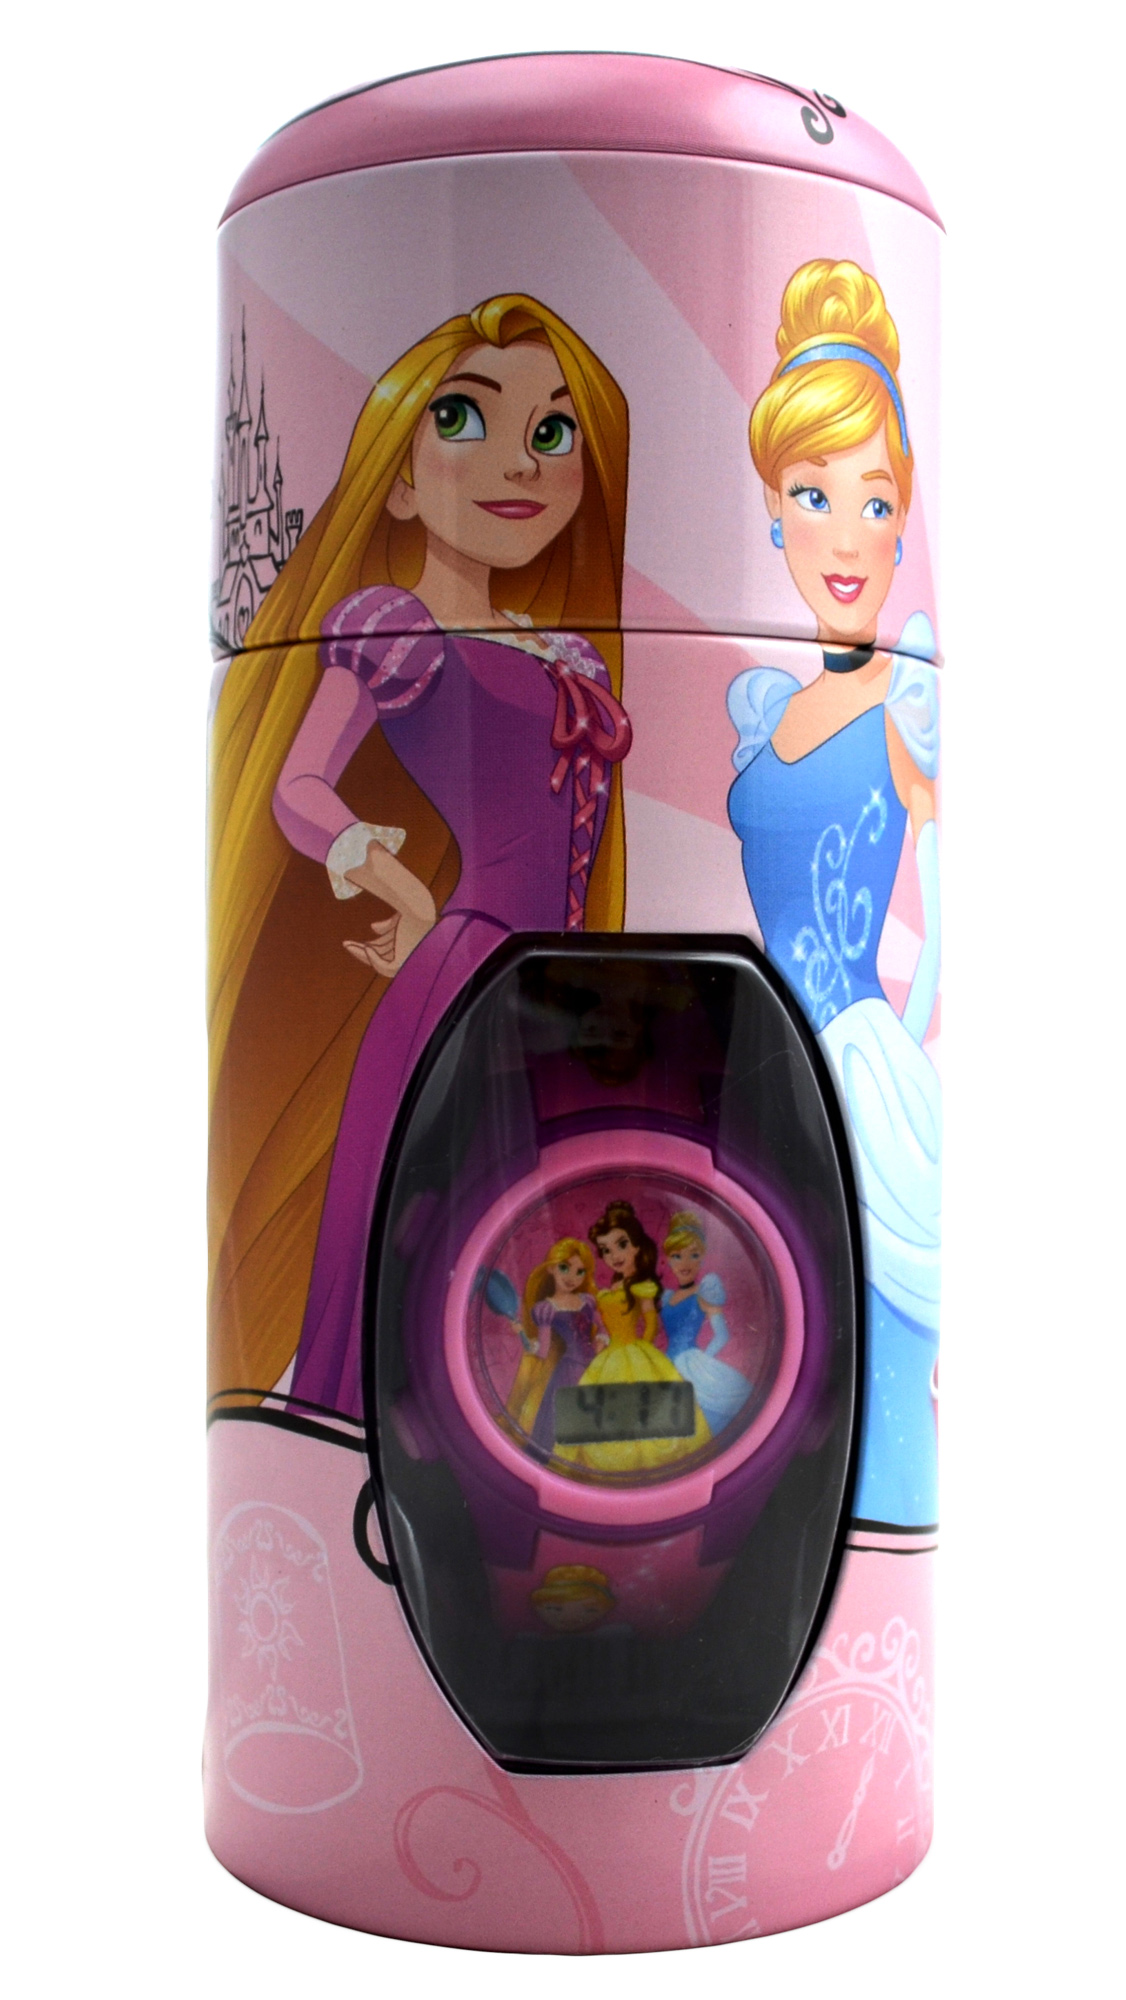 Disney Princess 'Rapunzel & Friends' Girls Digital Metal Tin Gift Wrist Watch